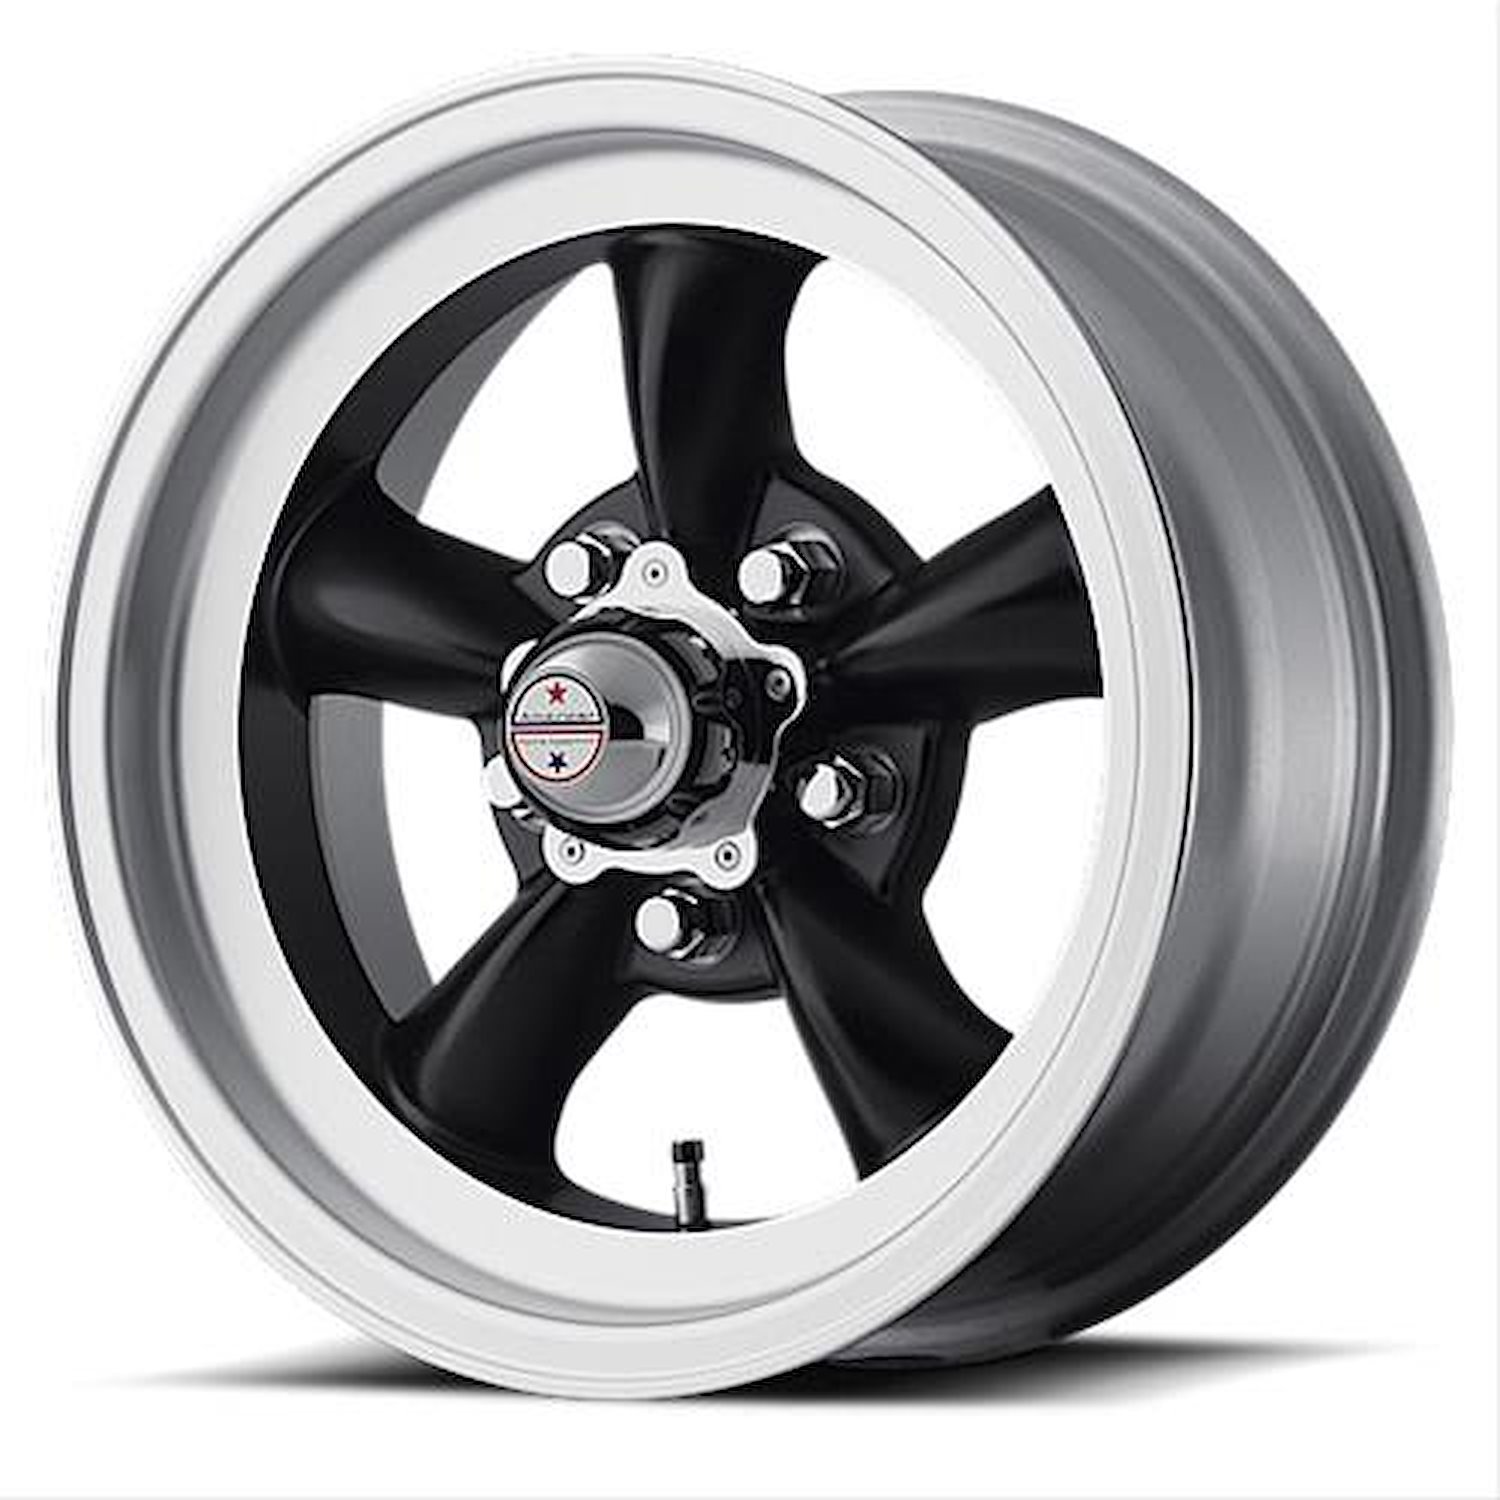 VN105D Series Torq-Thrust D Wheel Size: 15" x 6"